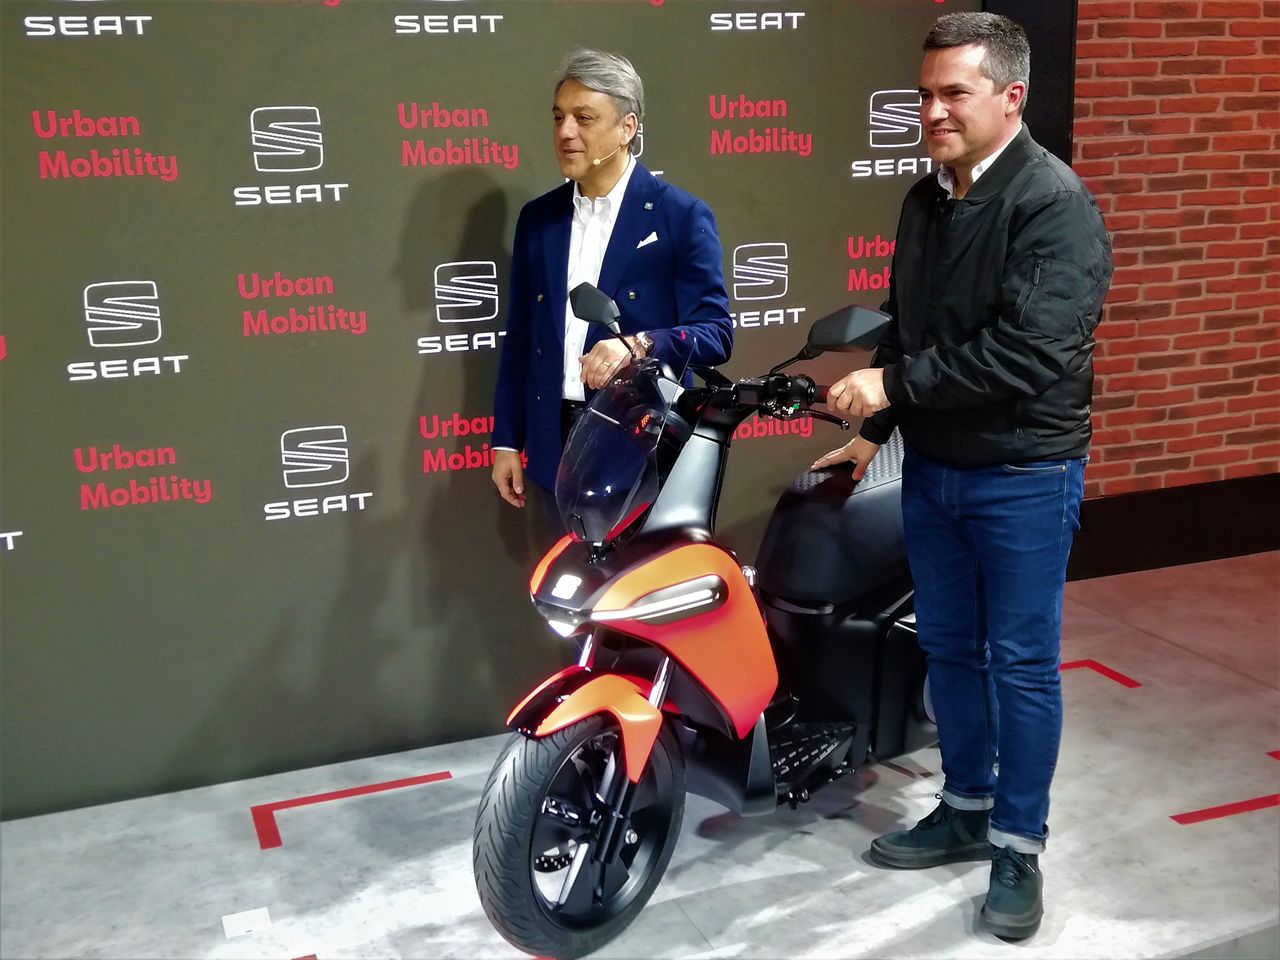 Na prezentacji nowego e-Scootera obecny był prezes Seata Luca de Meo oraz nowy szef SEAT Urban Mobility, Lucas Casasnovas